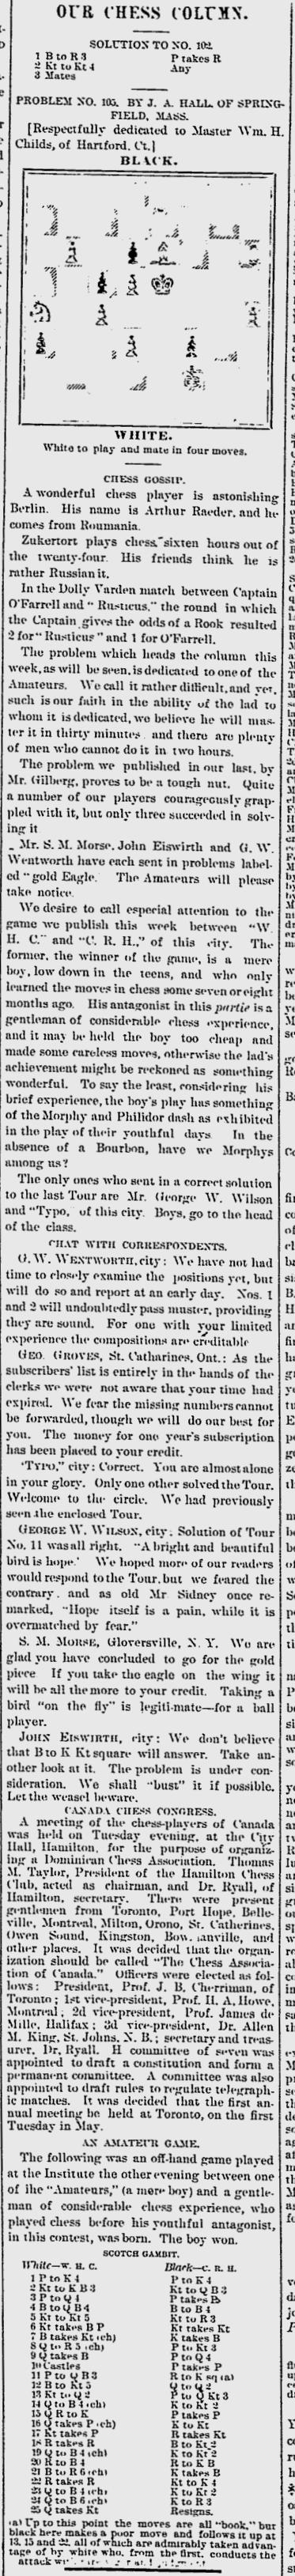 1872.10.19-01 Hartford Weekly Times.jpg